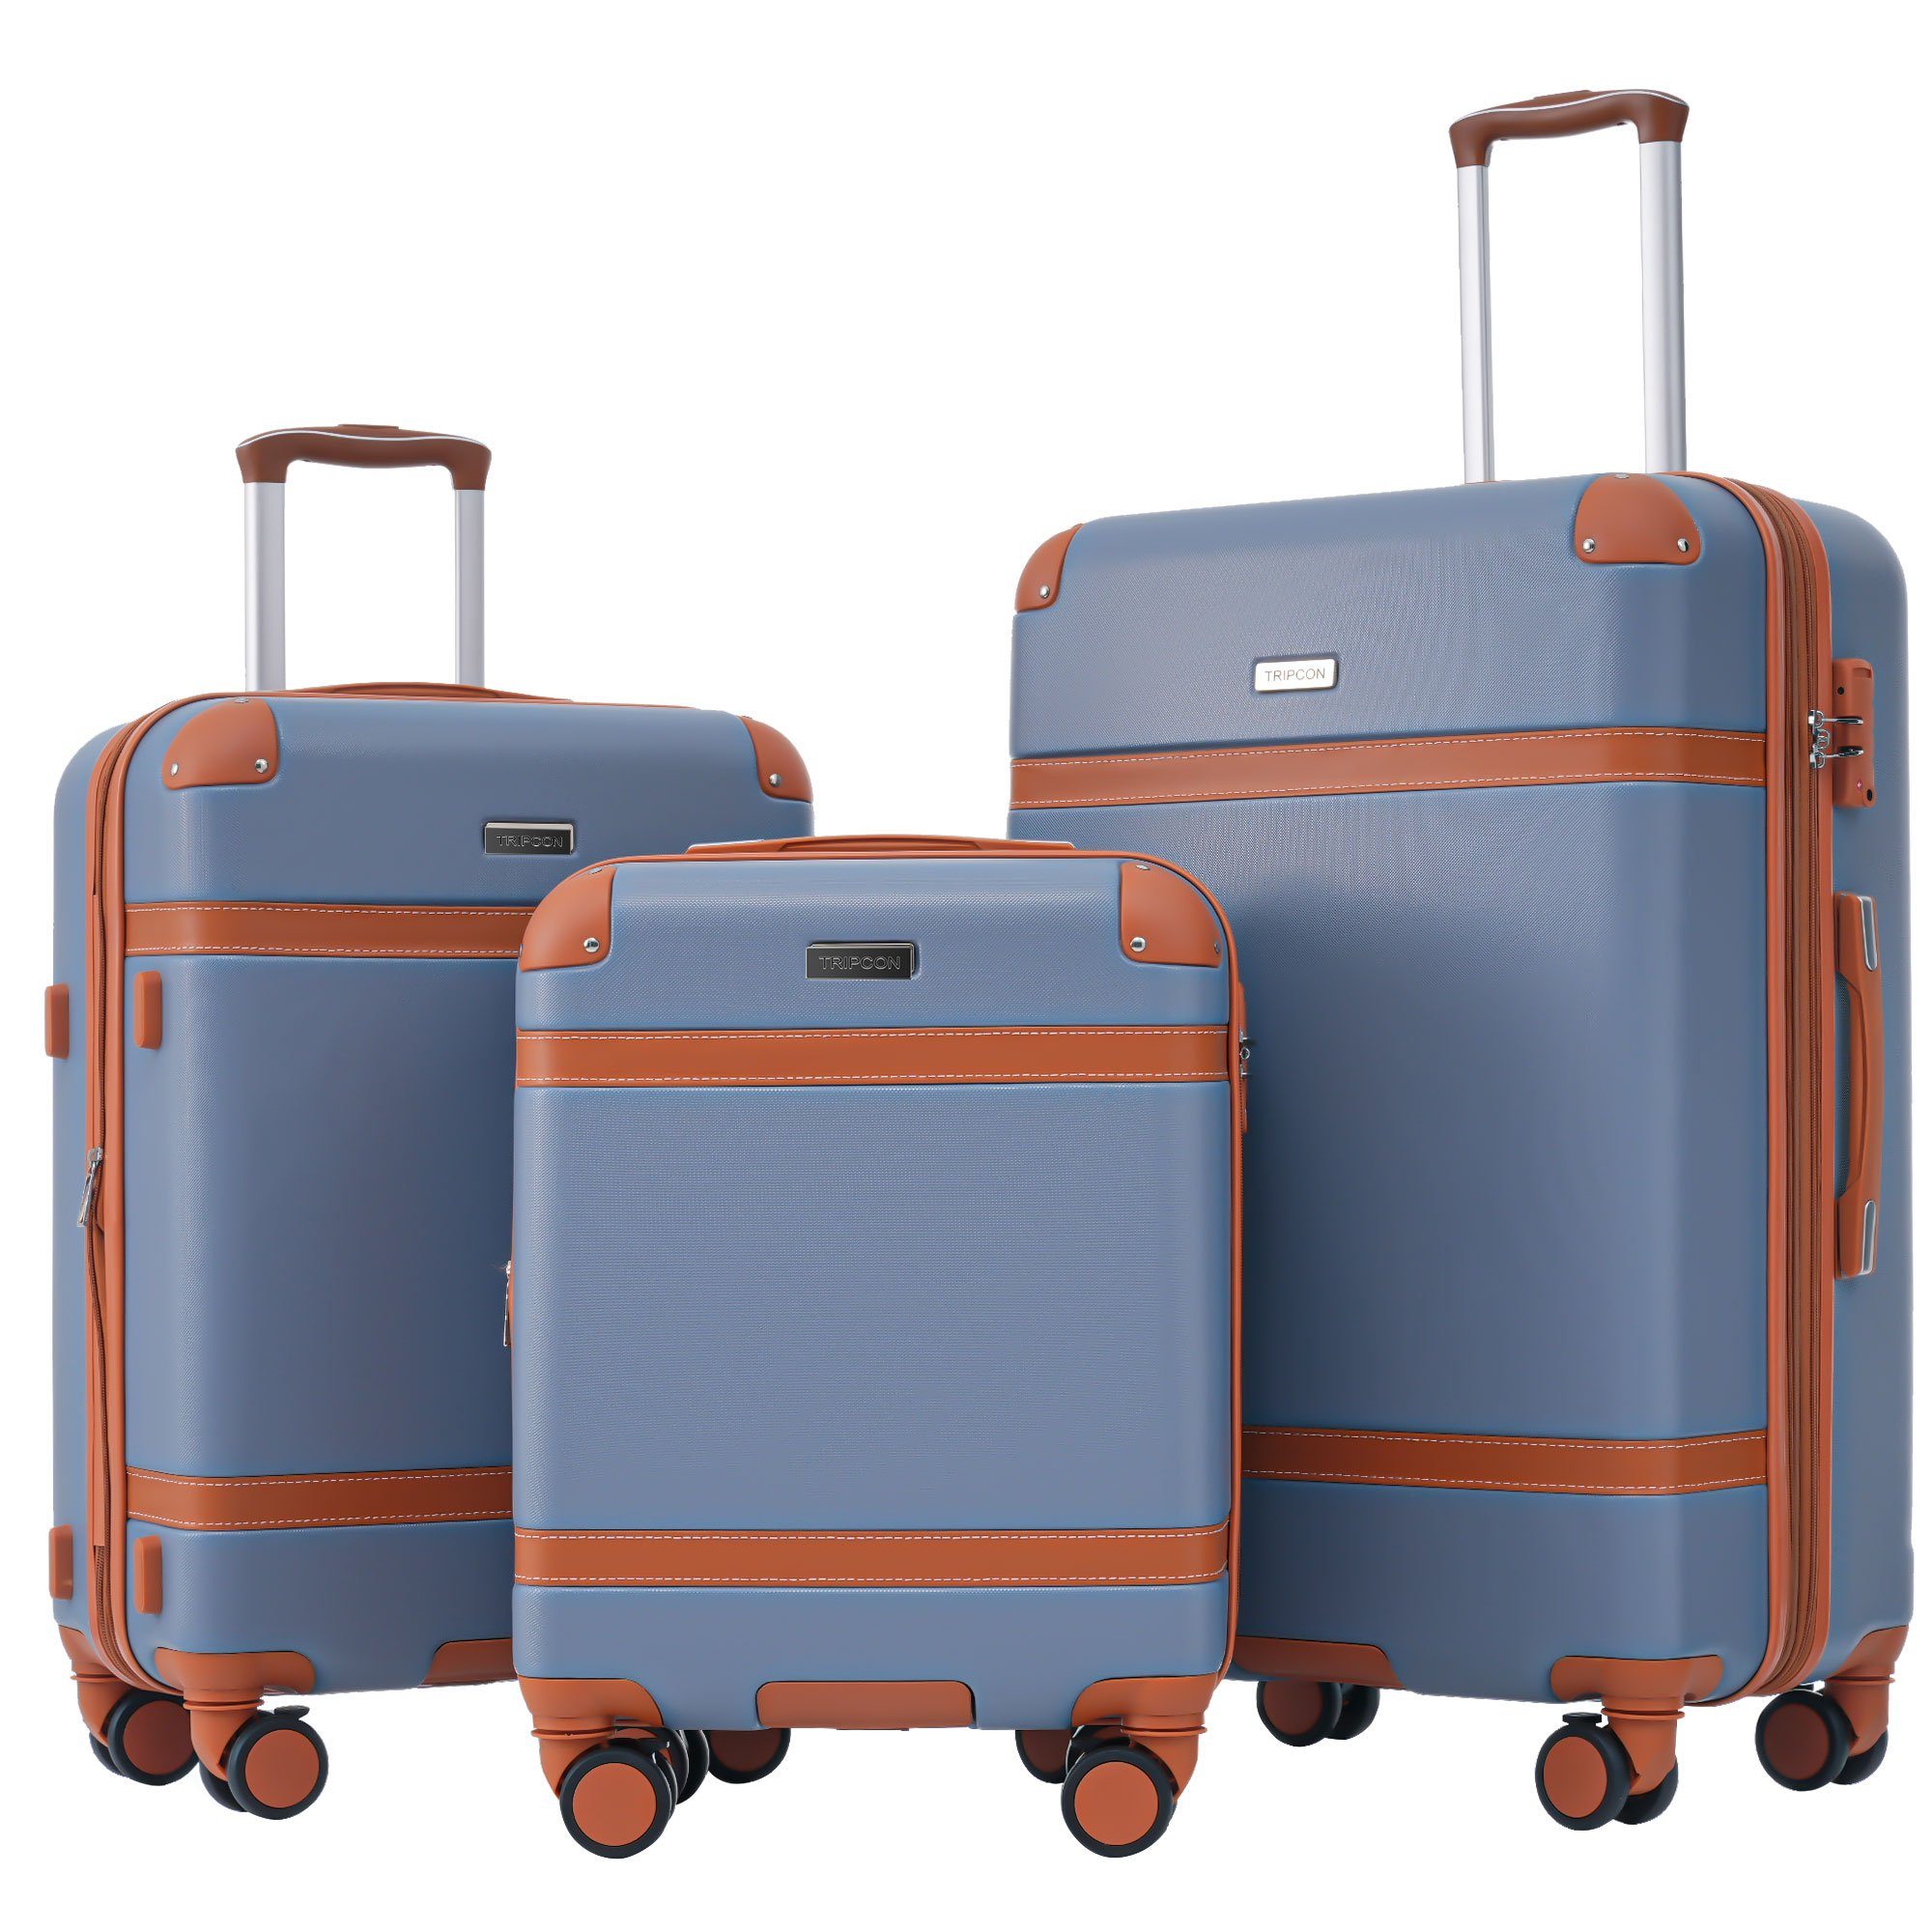 Ulife Trolleyset Kofferset Handgepäck Reisekoffer ABS-Material, TSA Zollschloss, 4 Rollen, (3 tlg) Blau